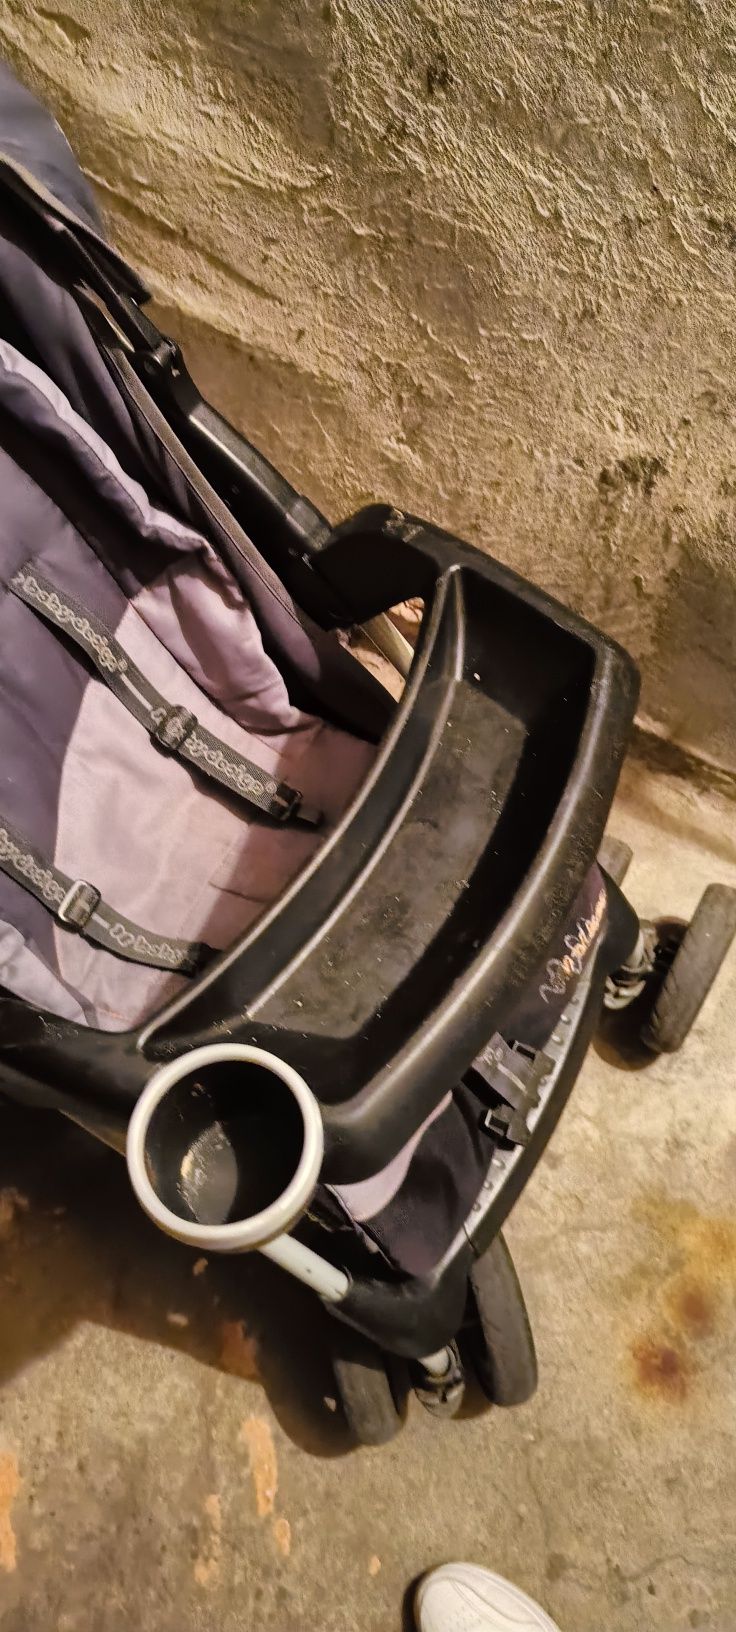 Wózek dziecięcy z tacka autko gratis